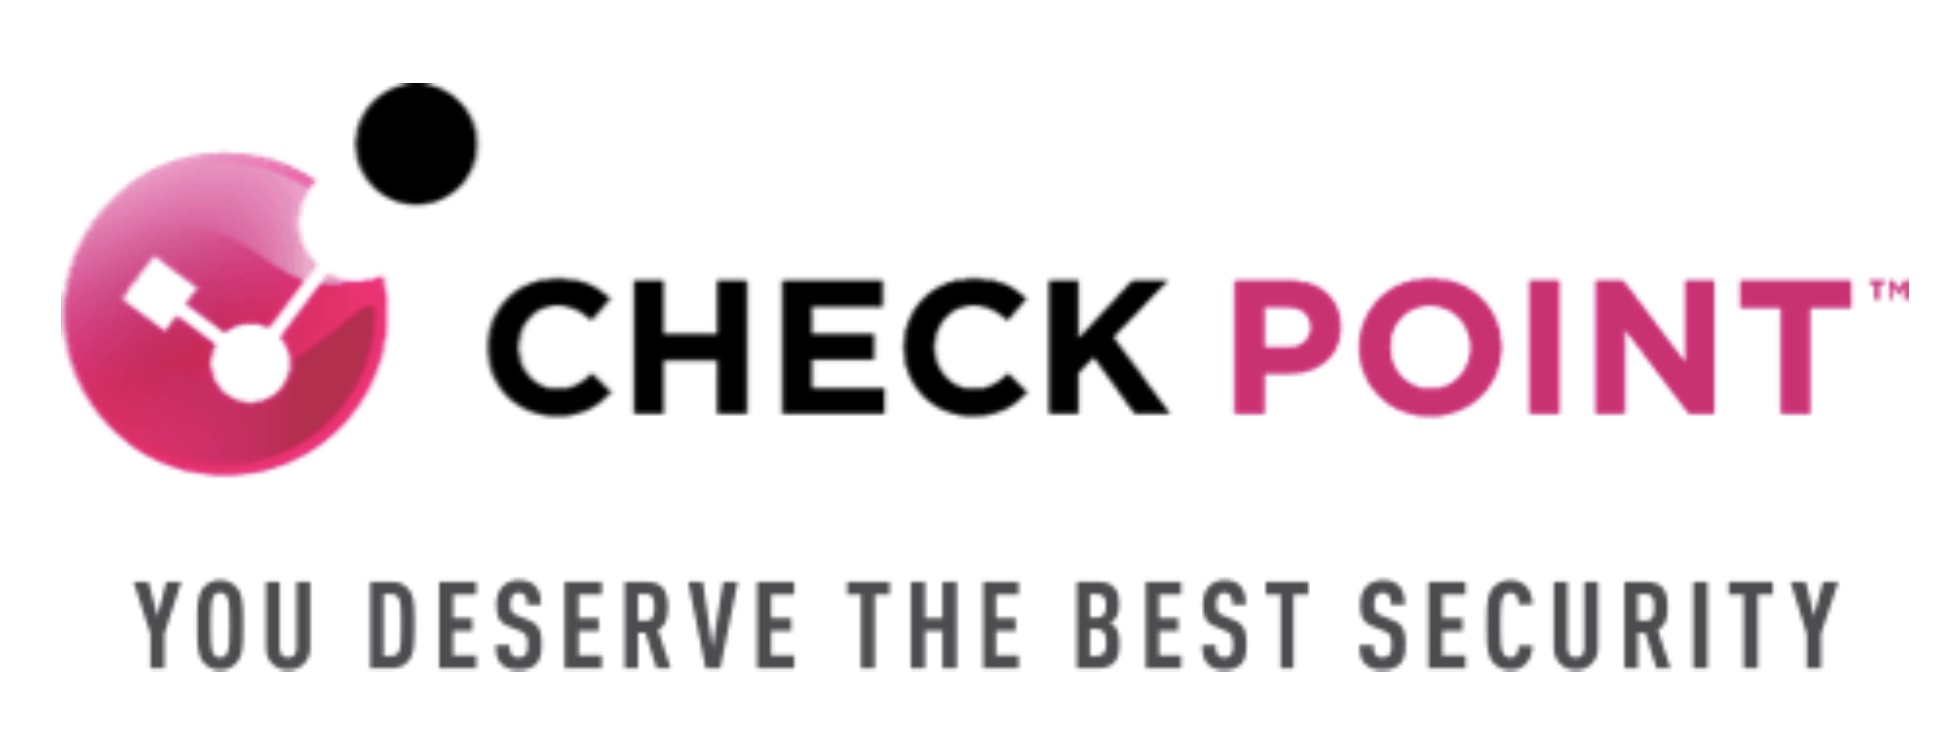 Check Point меняет логотип и слоган